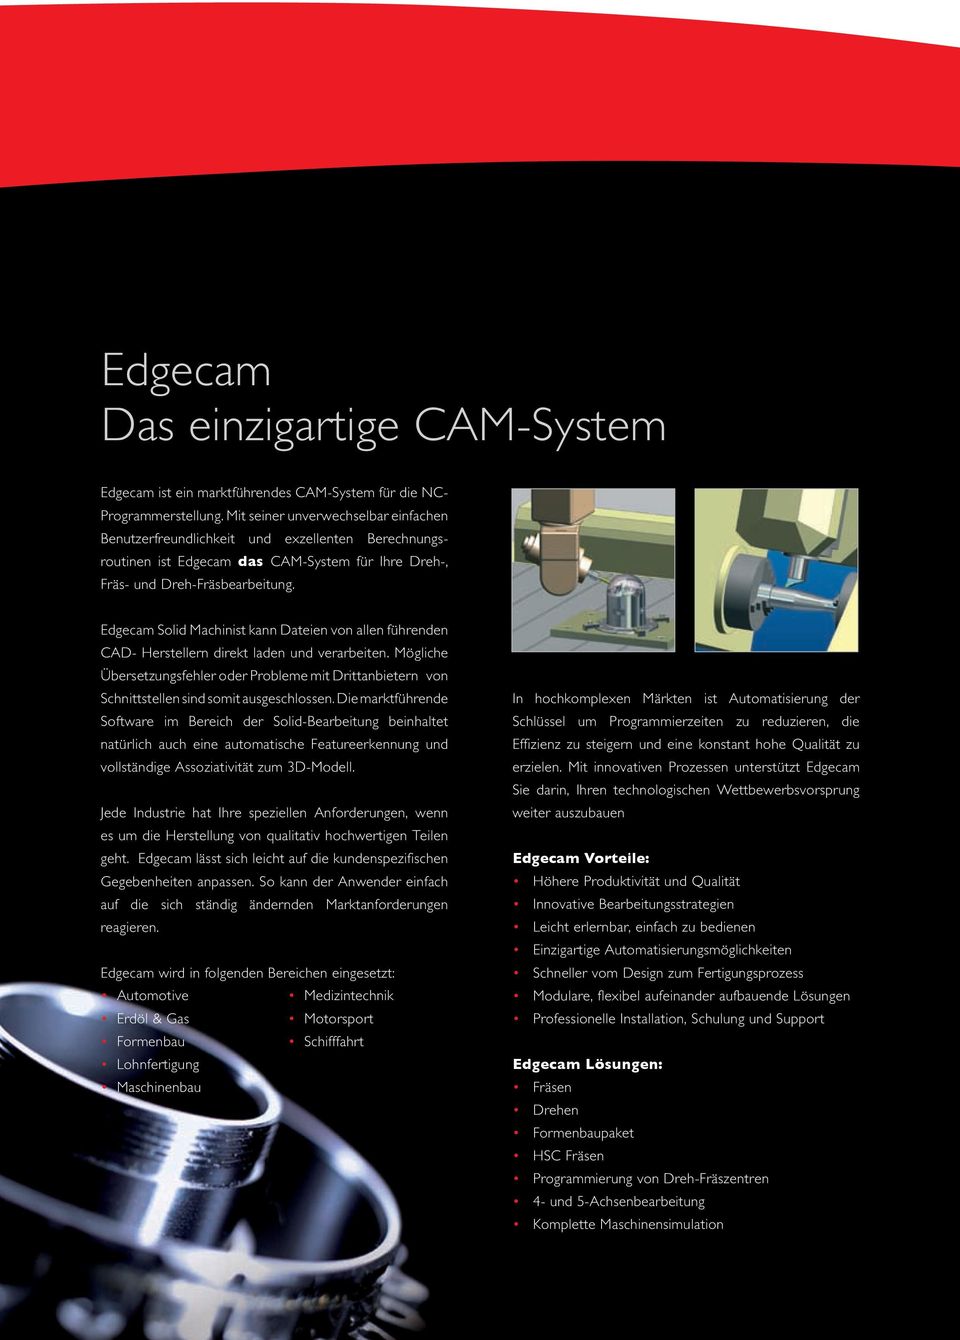 Edgecam Solid Machinist kann Dateien von allen führenden CAD- Herstellern direkt laden und verarbeiten.